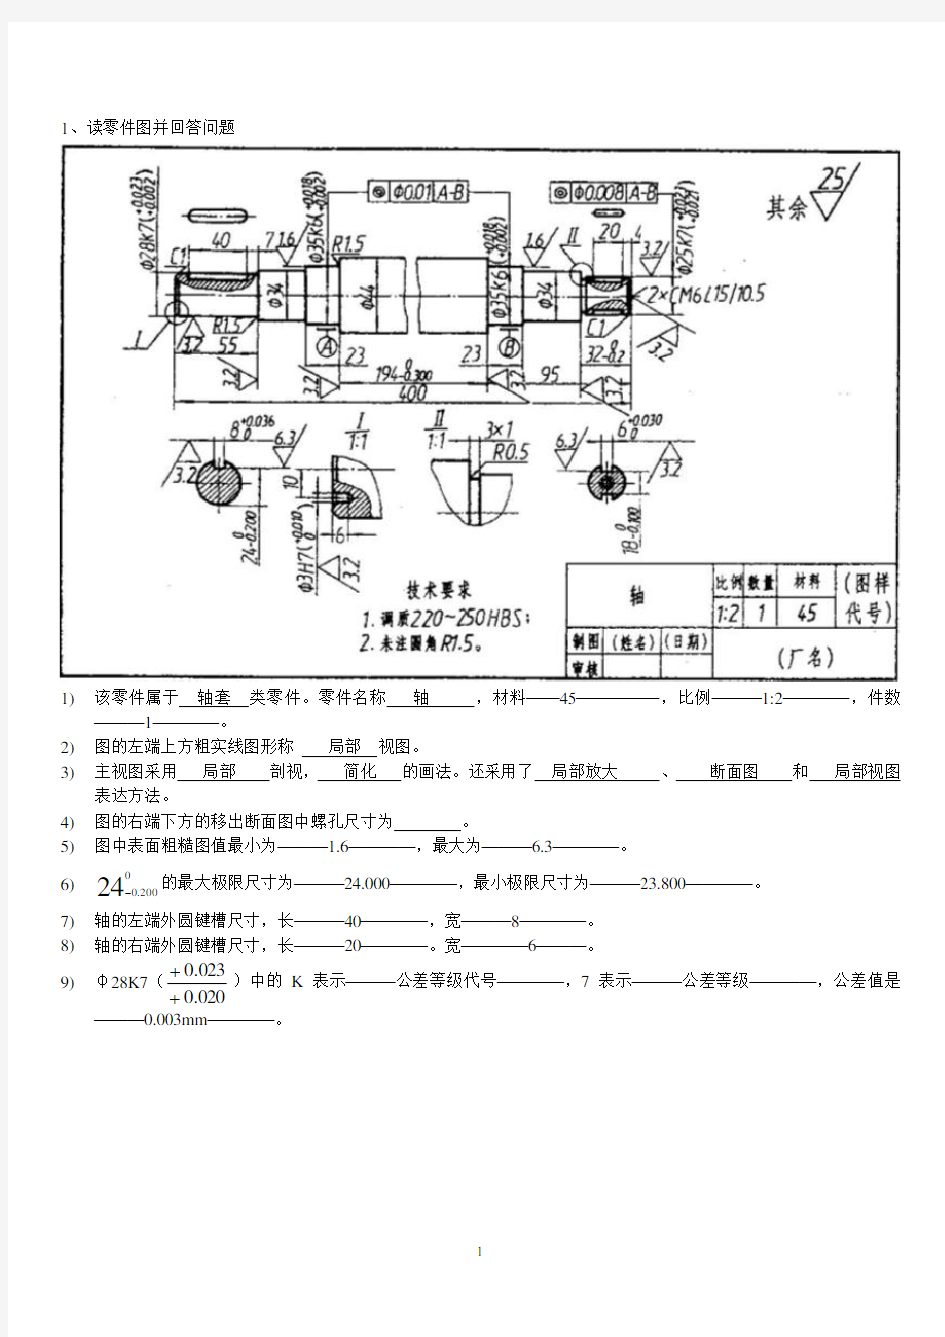 机械制图零件图习题(打印练习).pdf